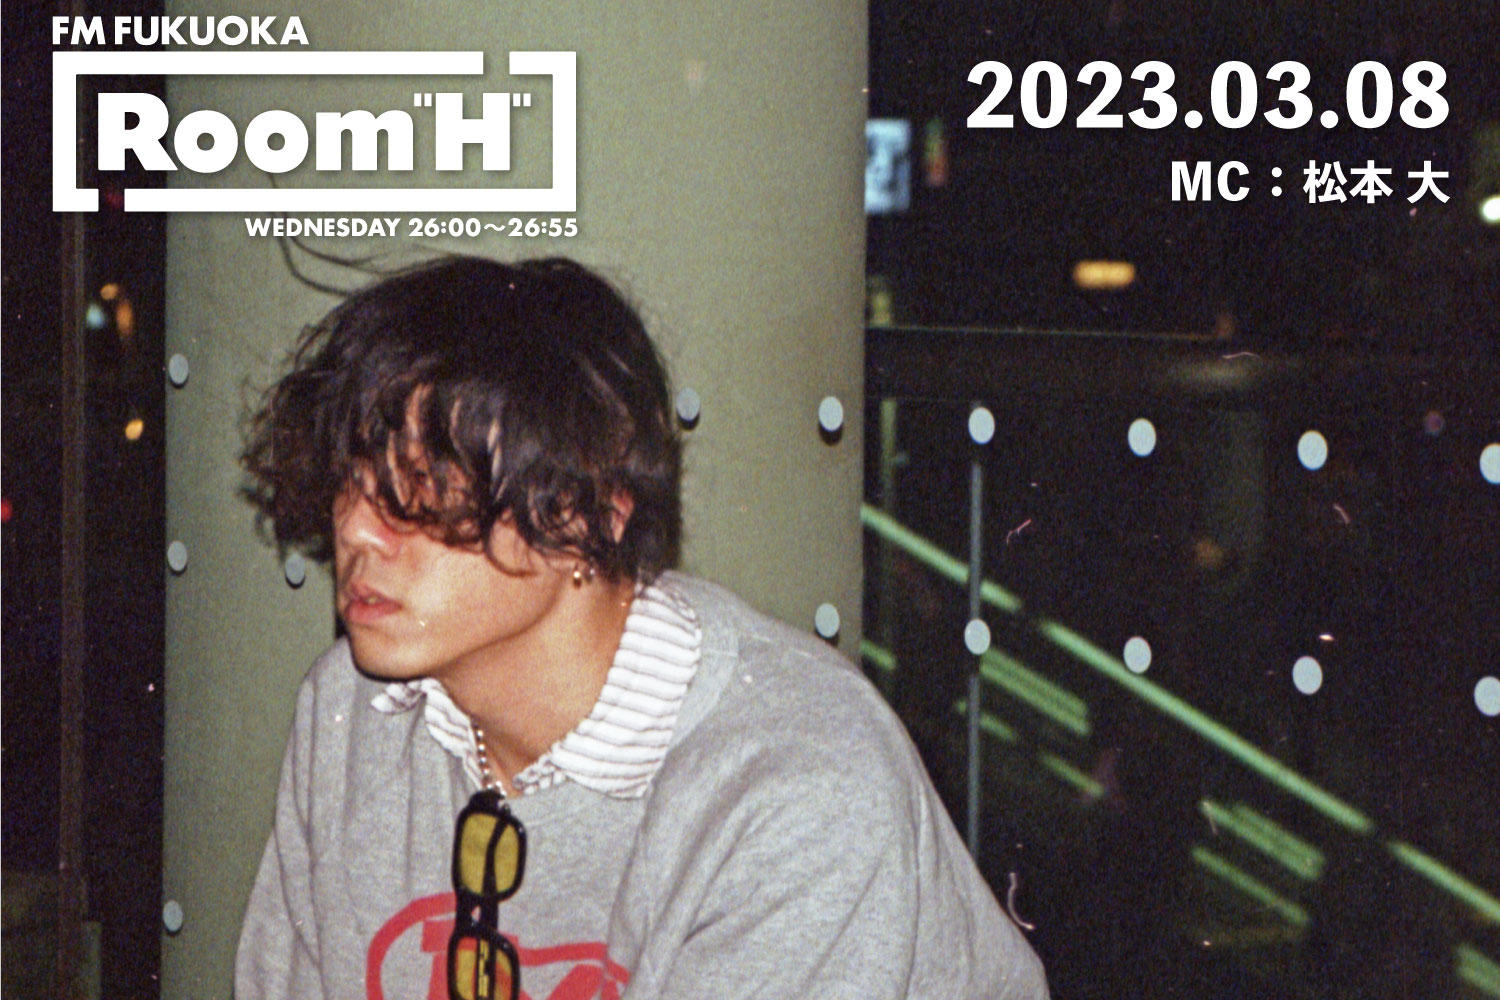 【読むラジオ】MC：松本大 「卒業」というテーマで楽曲を紹介！「Room H」-2023.03.08-